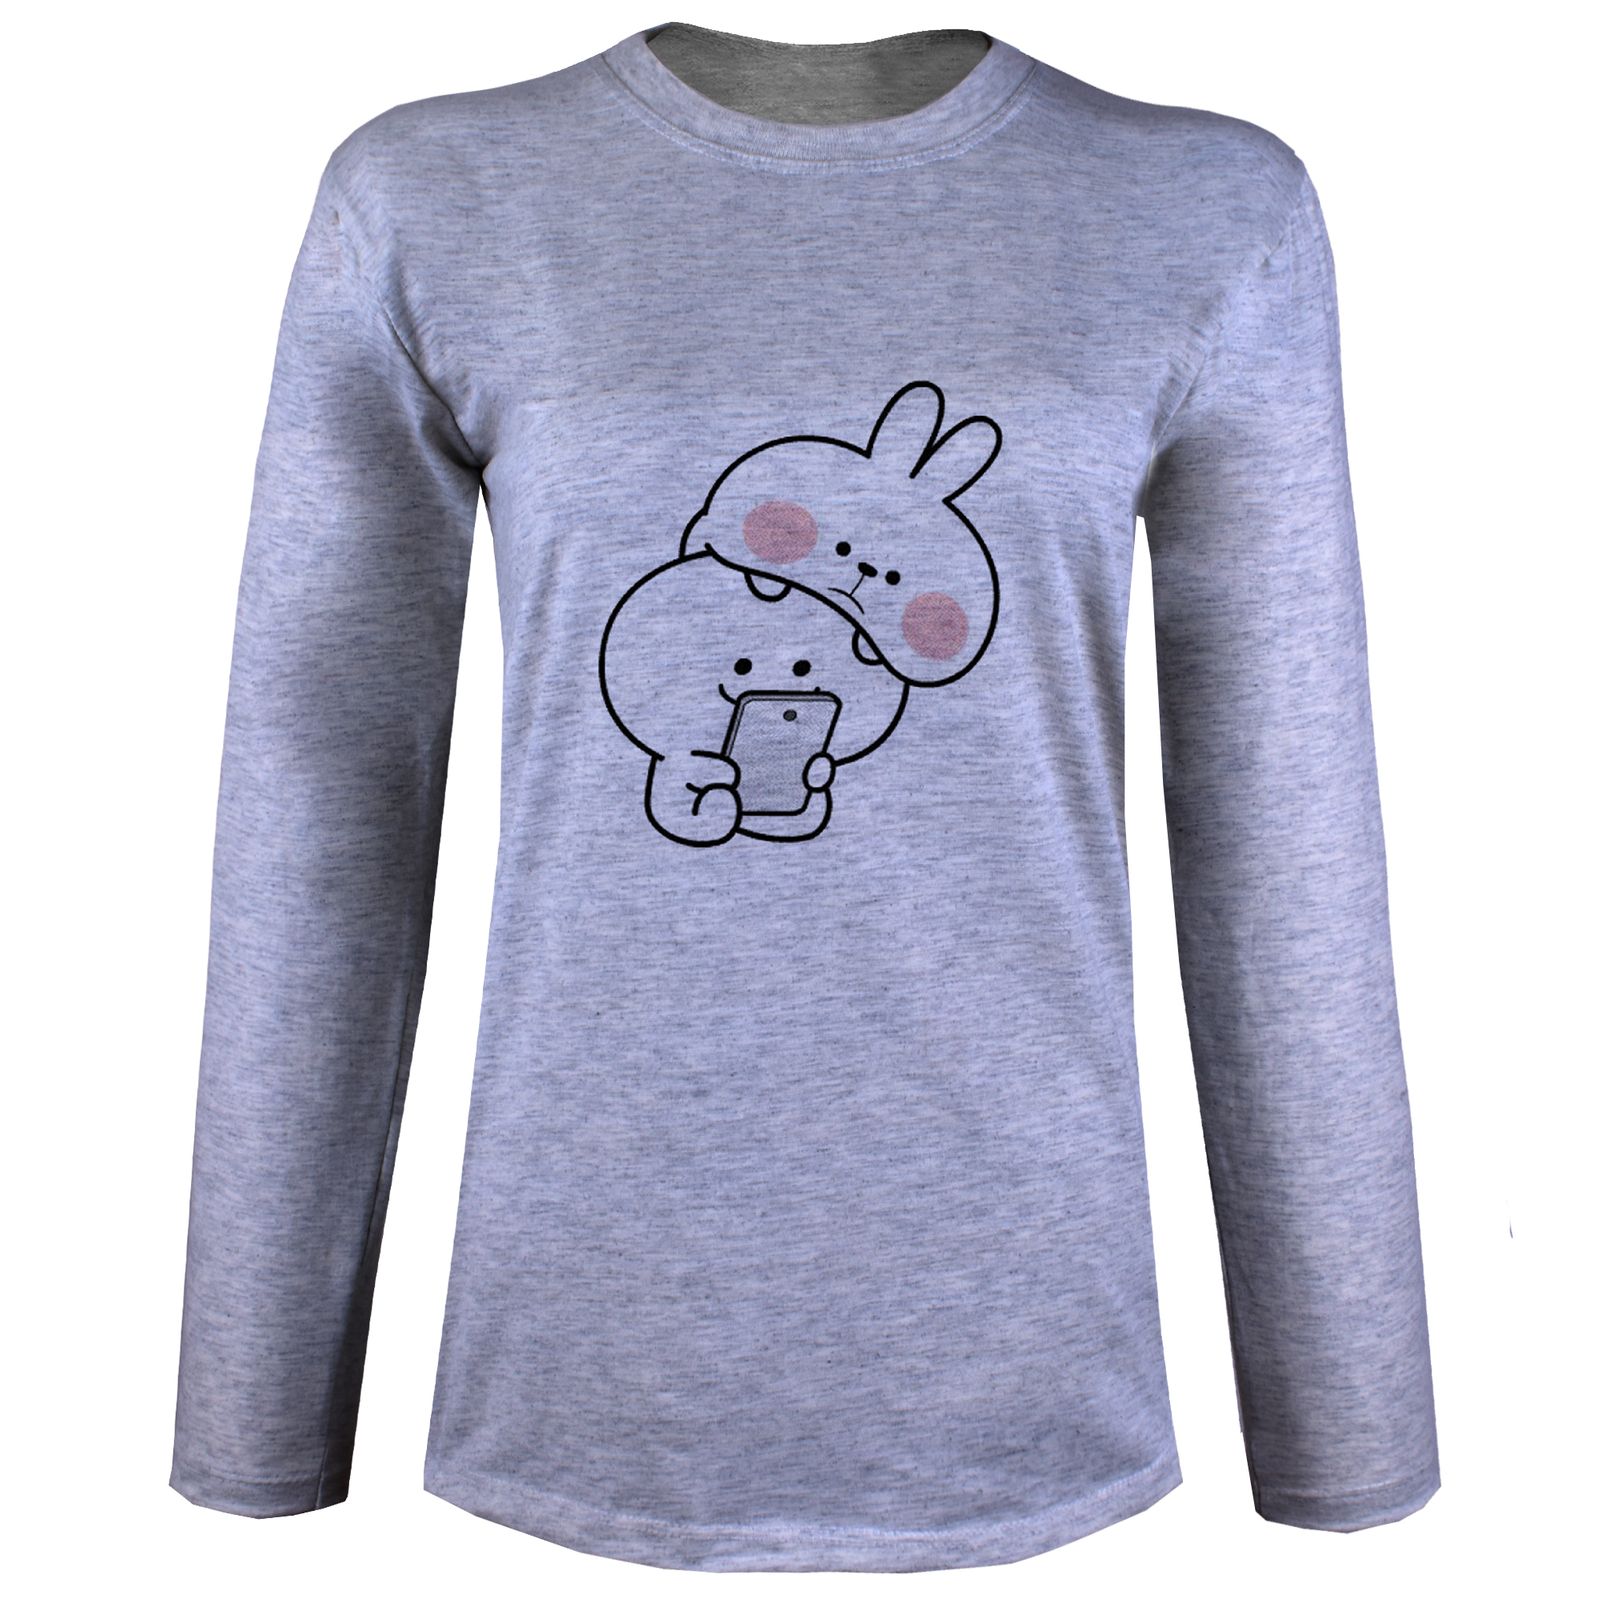 تی شرت آستین بلند زنانه مدل خرگوش X29 -  - 2